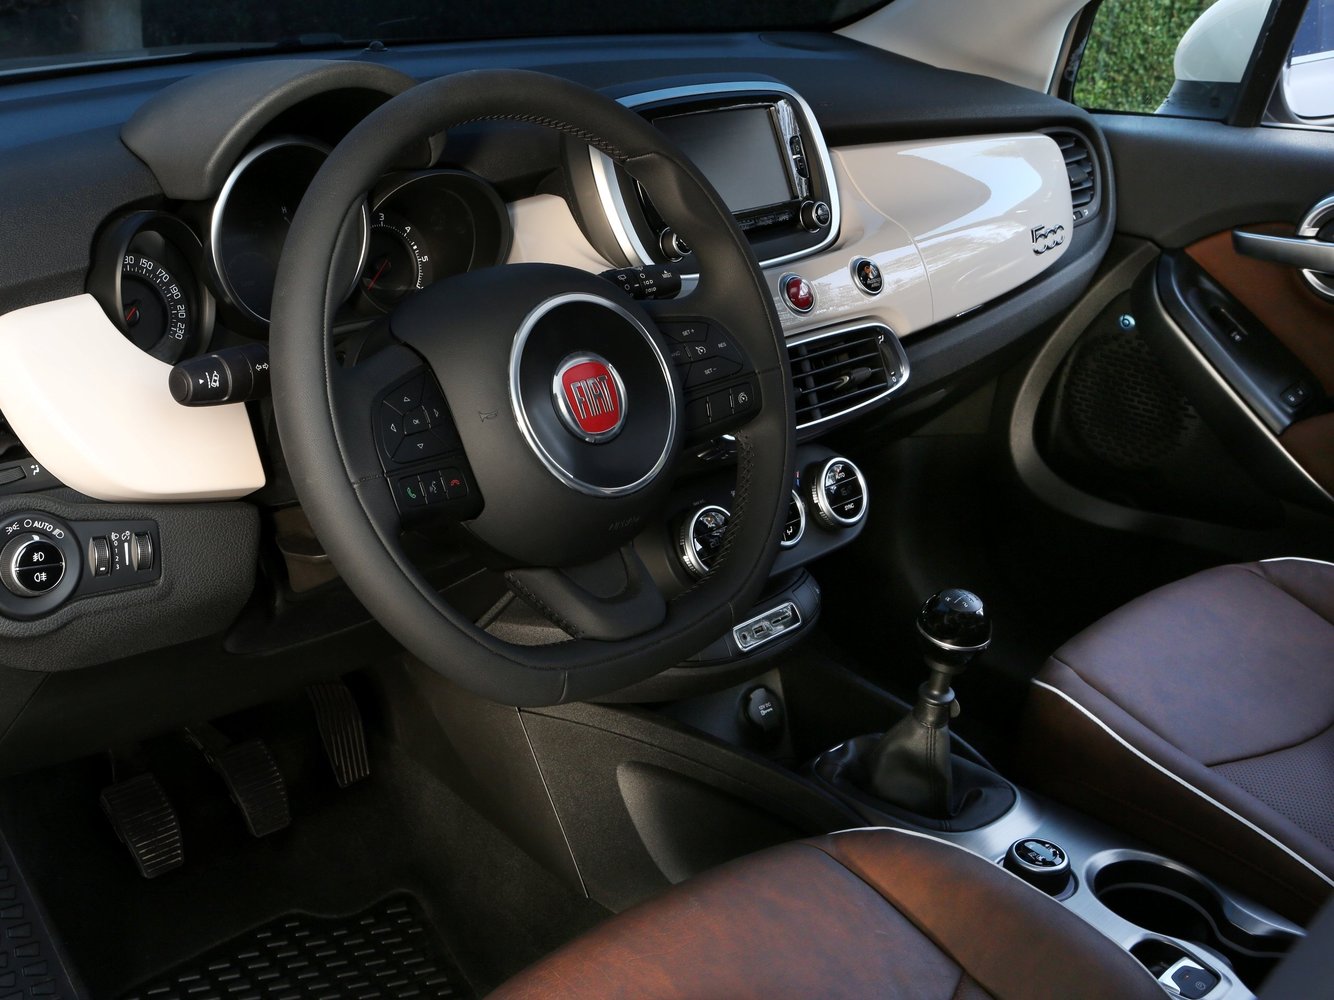 кроссовер Fiat 500X 2014 - 2016г выпуска модификация 1.4 MT (140 л.с.)